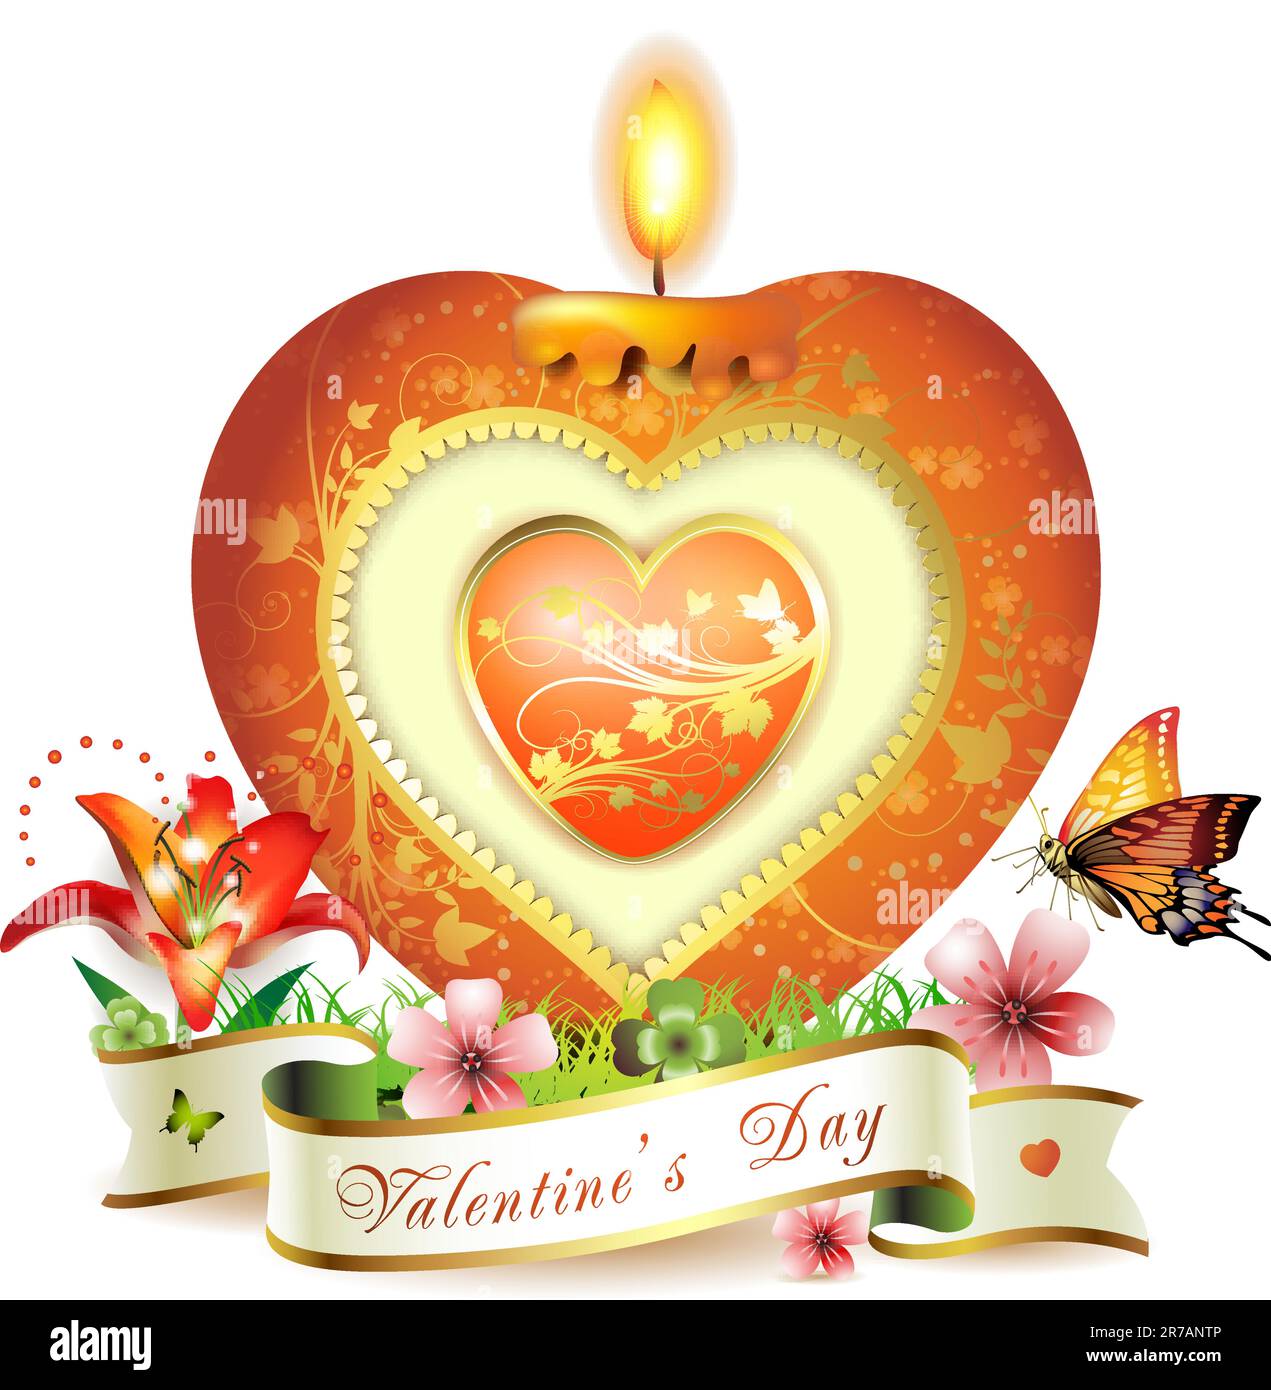 Carte de Saint-Valentin. Bougie élégante rouge en forme de coeur, décorations dorées, fleurs et ruban Illustration de Vecteur